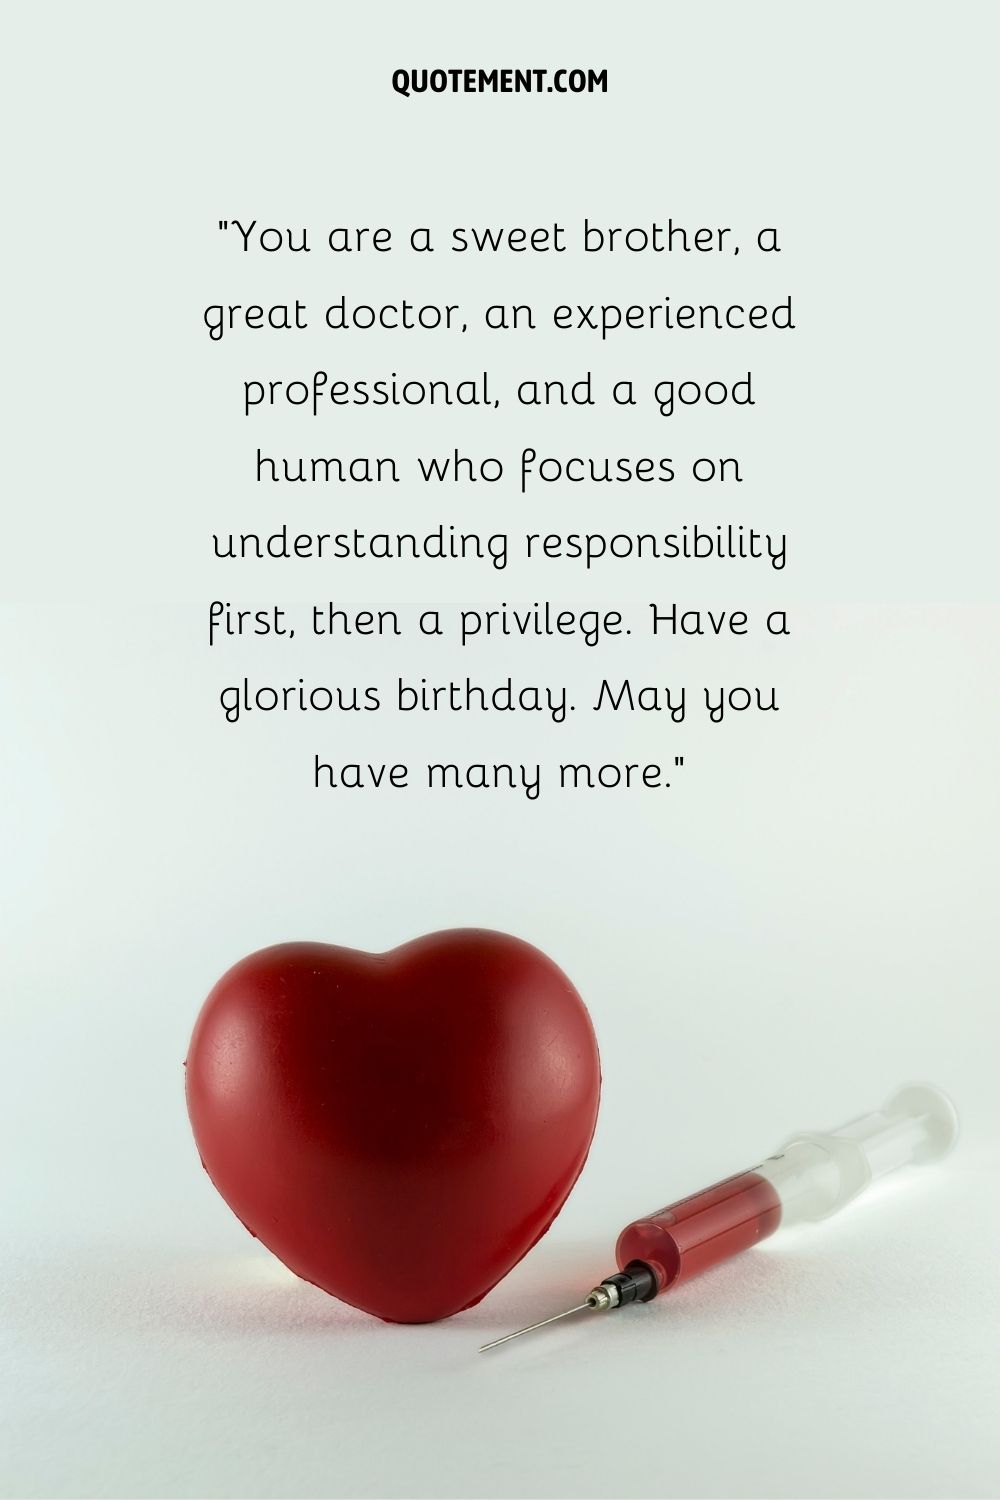 feliz cumpleaños doctor hermano deseos representado por maravilloso equipo médico